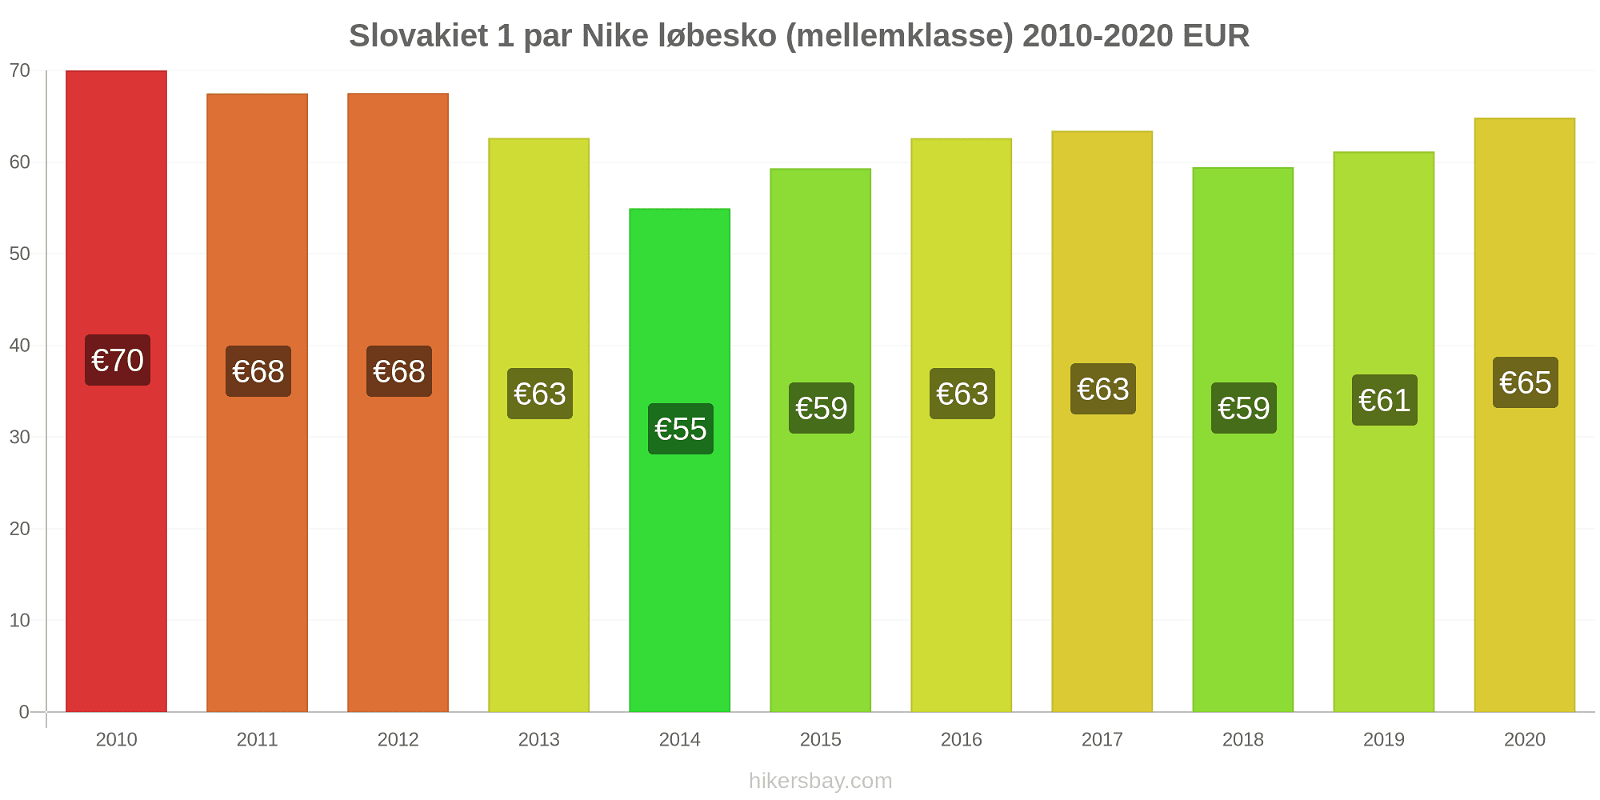 Slovakiet prisændringer 1 par Nike løbesko (mellemklasse) hikersbay.com